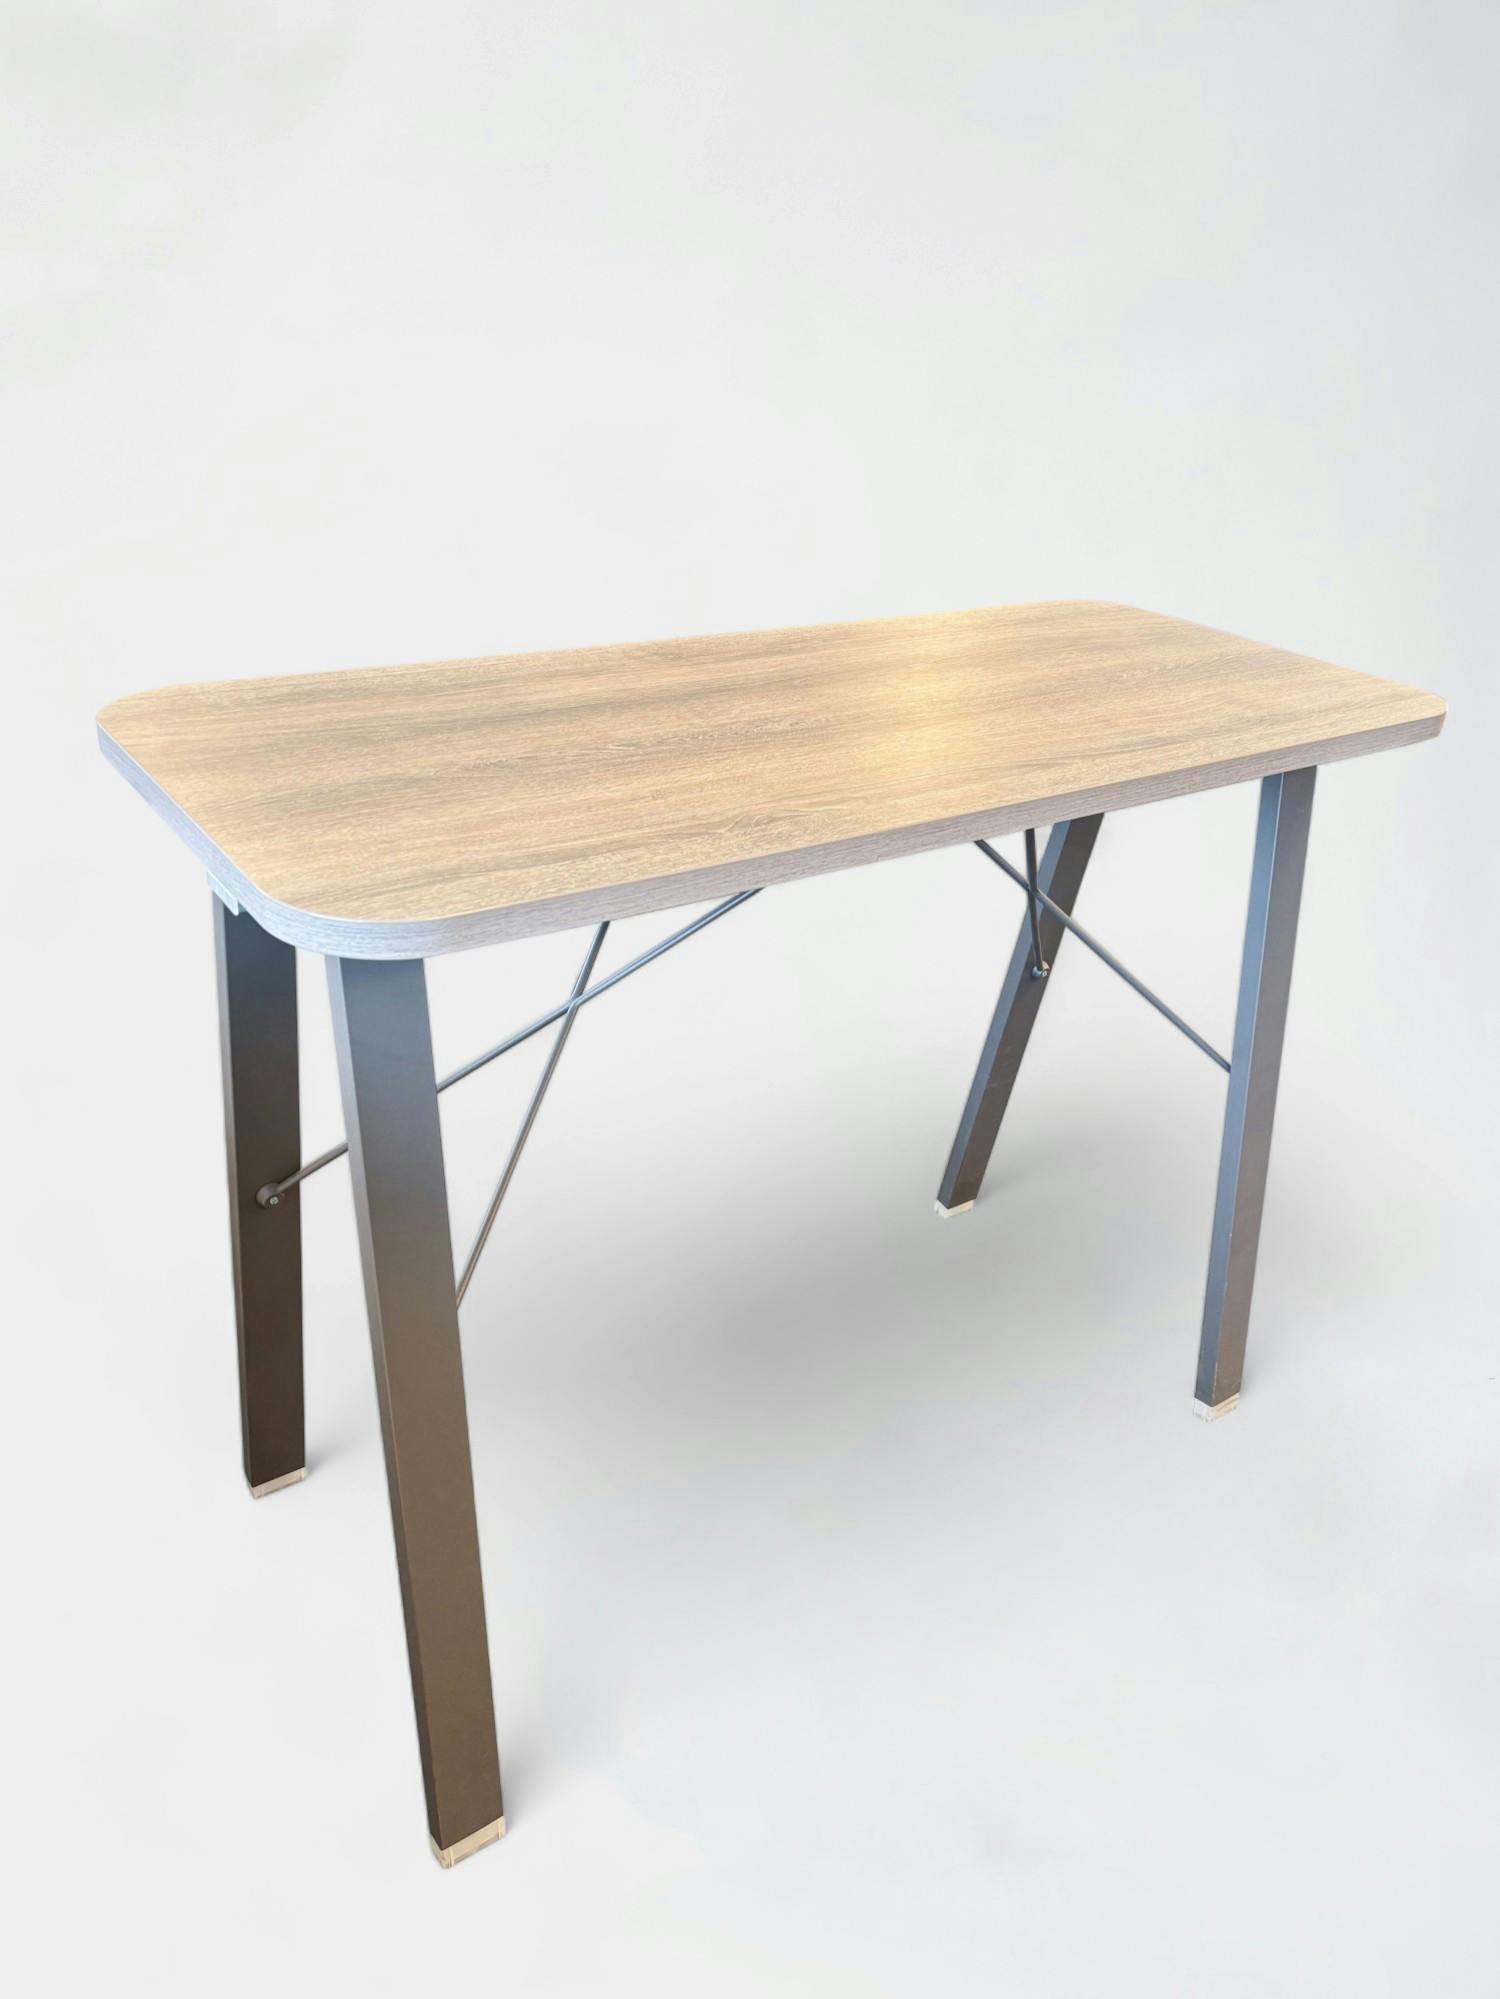 Light Woodgrain Wooden Adjustable Standing Desk with Sleek Metal Legs - Relieve Furniture